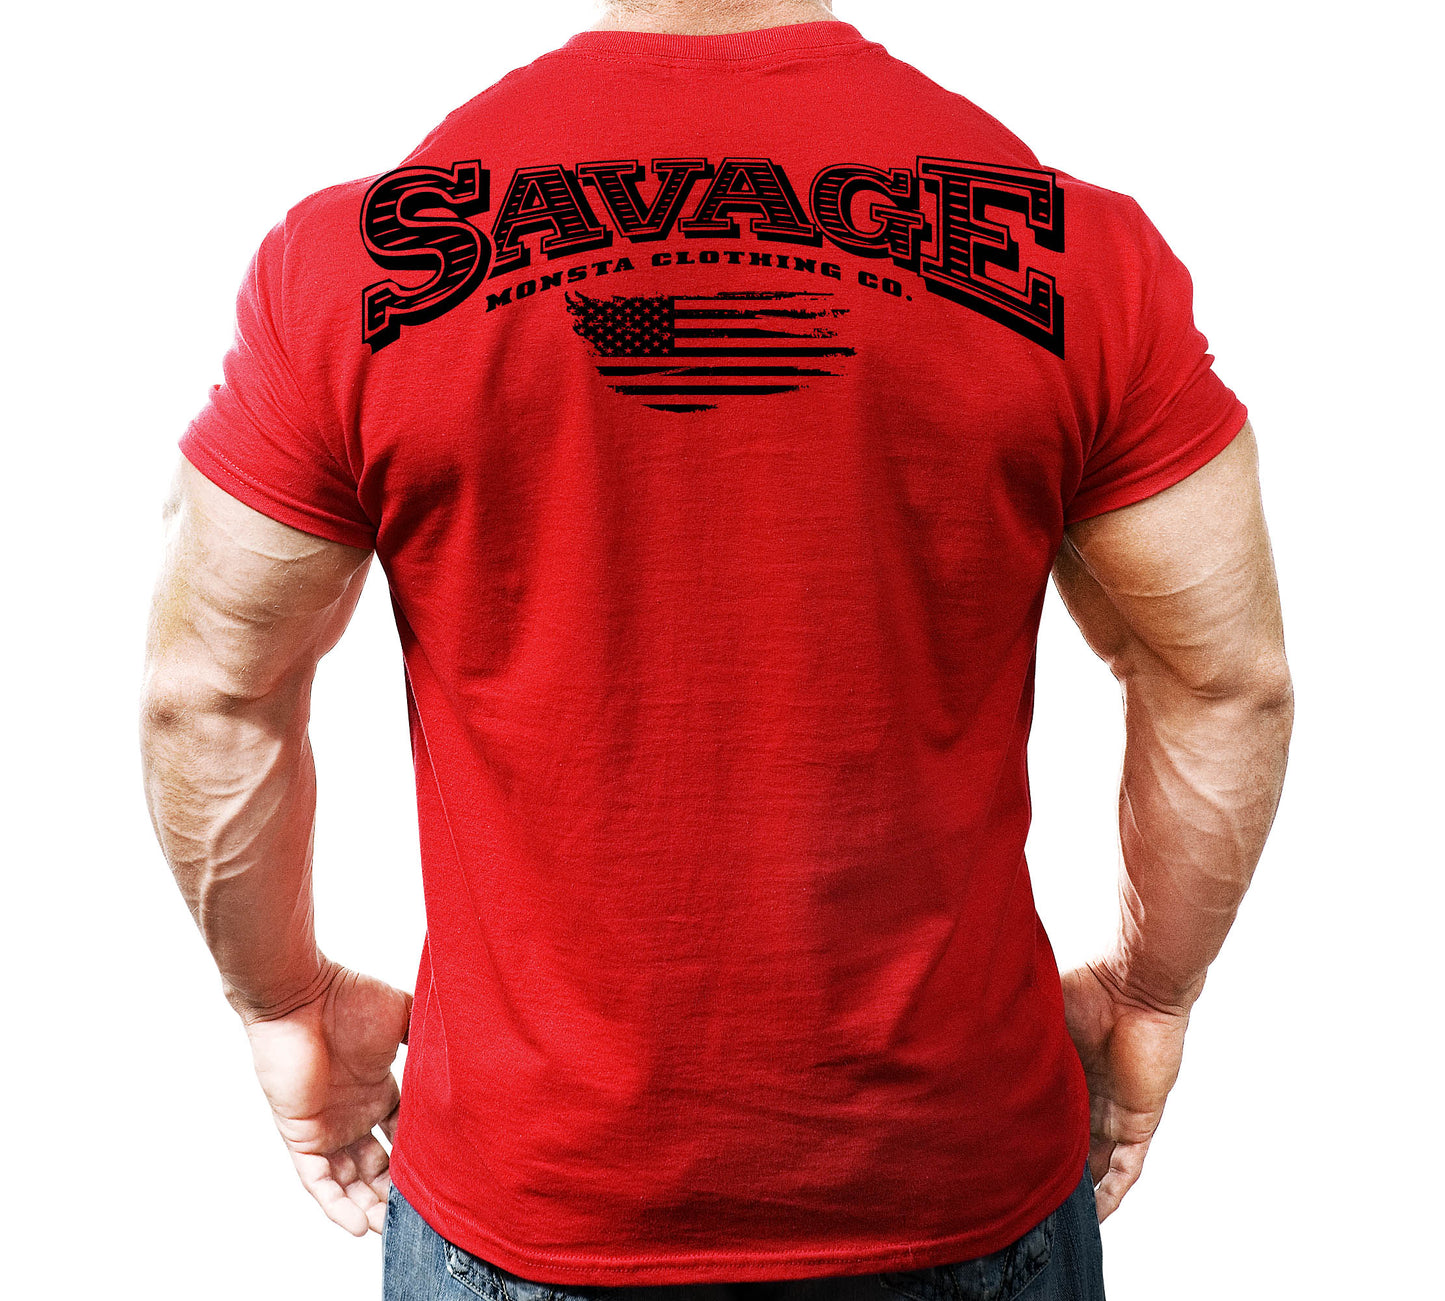 Savage-342: Black